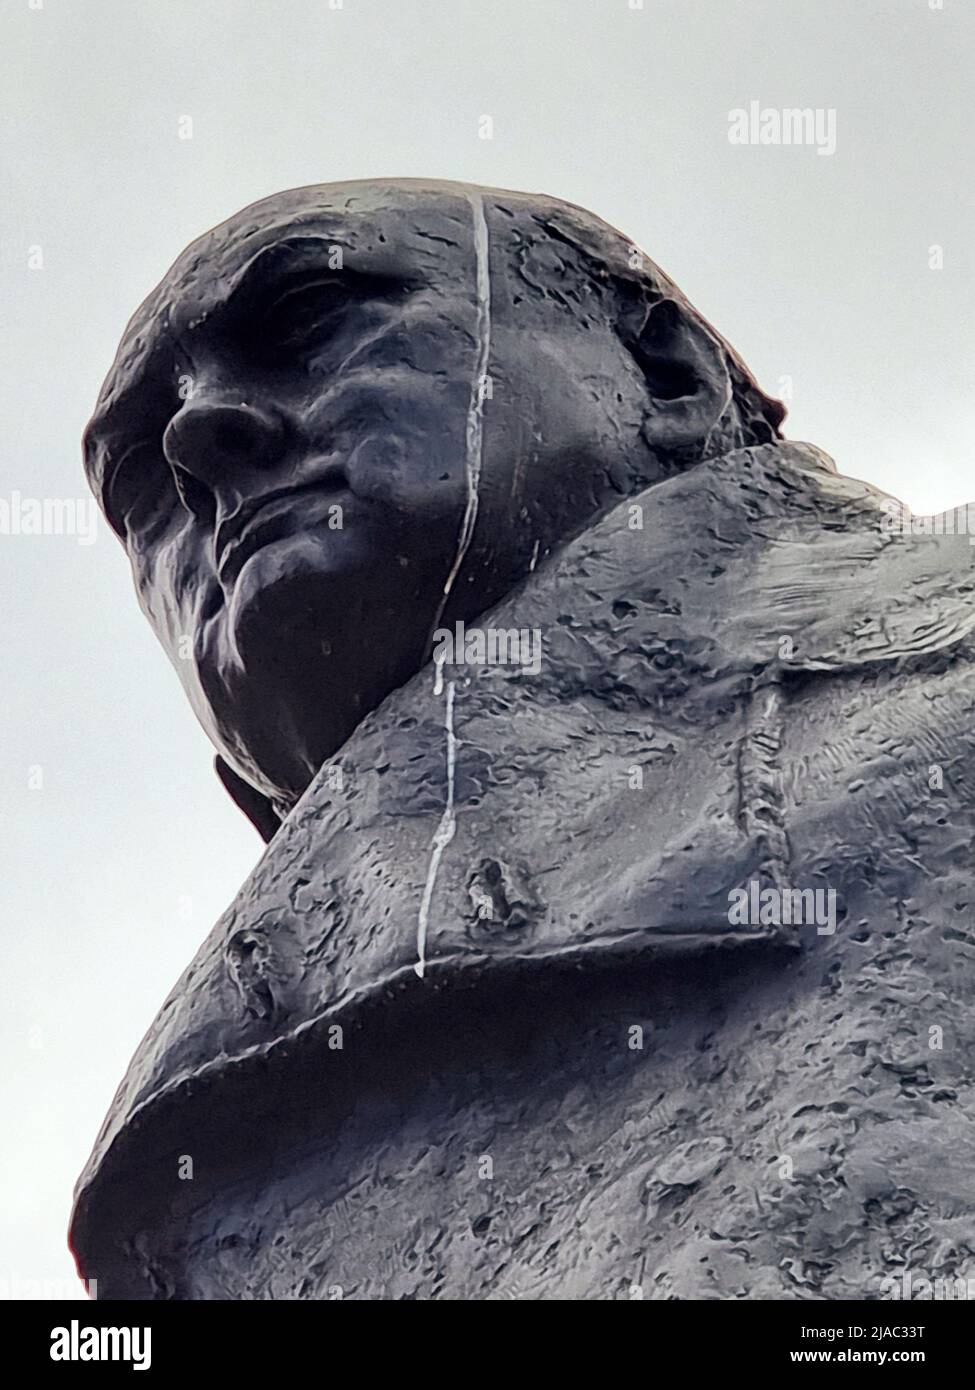 Die Statue von Winston Churchill auf dem Parliament Square in London ist eine Bronzeskulptur des ehemaligen britischen Premierministers Winston Churchill, die von Ivor Roberts-Jones geschaffen wurde. Es befindet sich an einem Ort, der im Jahr 1950s von Churchill als „wohin meine Statue gehen wird“ bezeichnet wurde. London, Großbritannien. Stockfoto